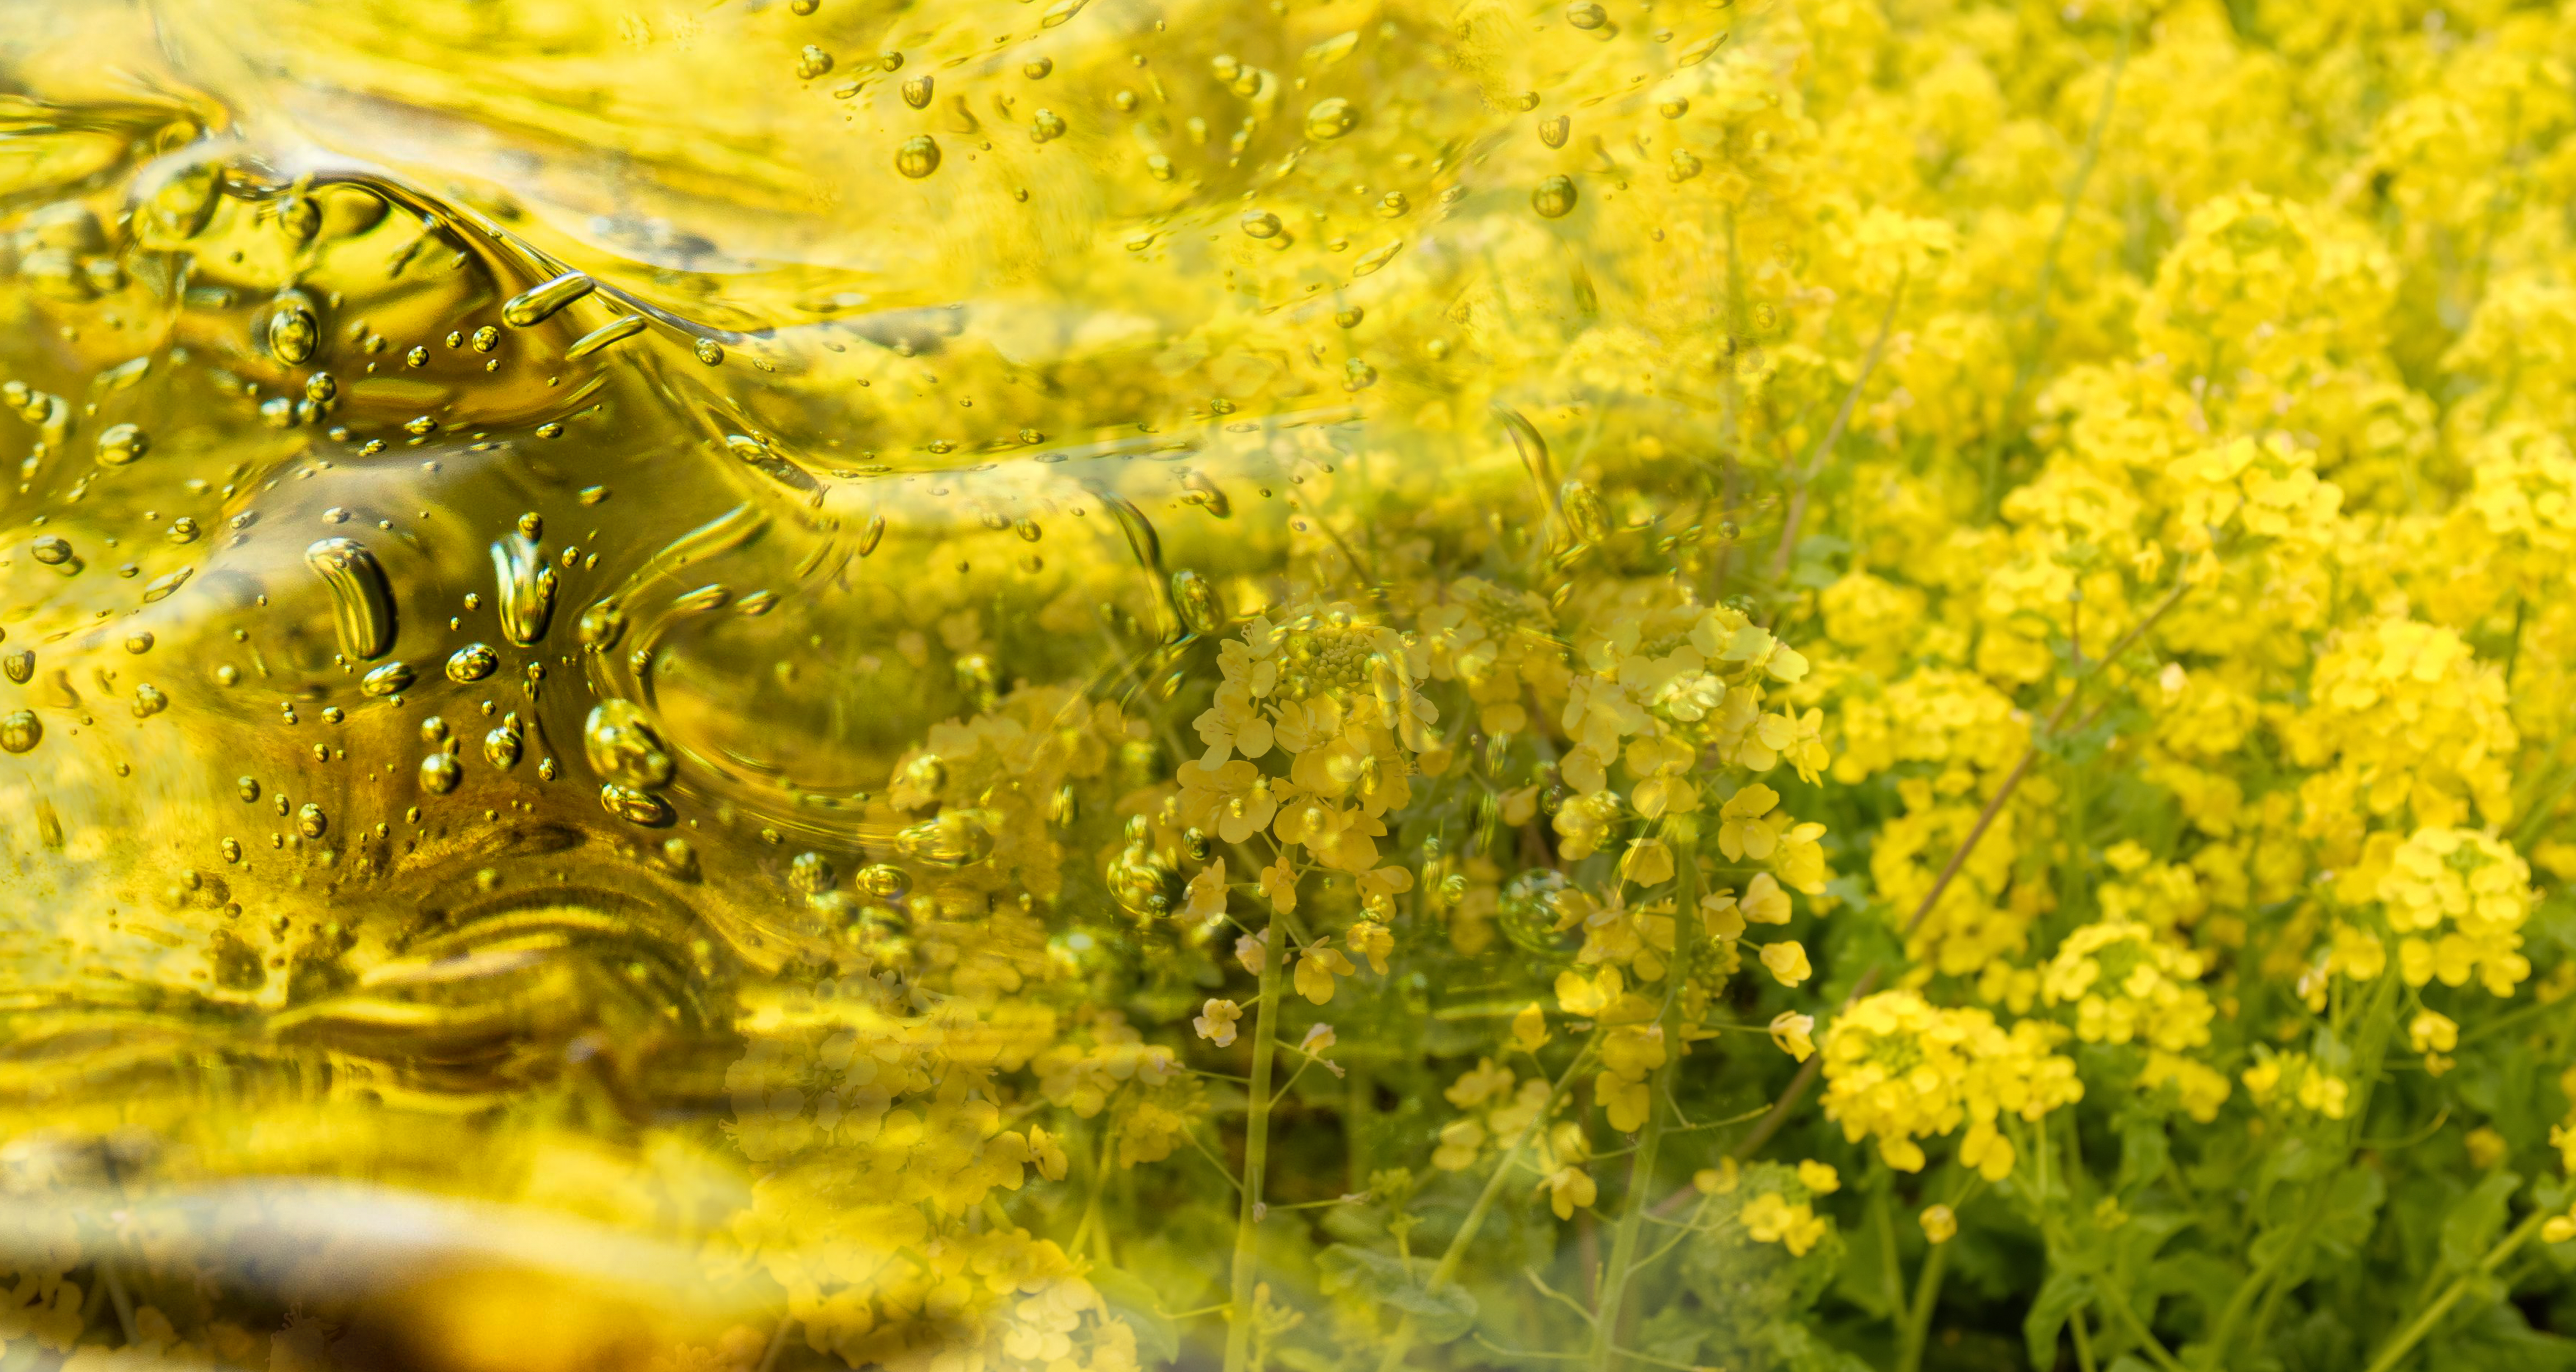 Una sinfonía de colores y sostenibilidad: el brillante amarillo de las flores de canola contrasta armoniosamente con el líquido dorado del aceite hidráulico vegetal. Una imagen que evoca la promesa de tecnología verde y un compromiso con el medio ambiente en la industria.